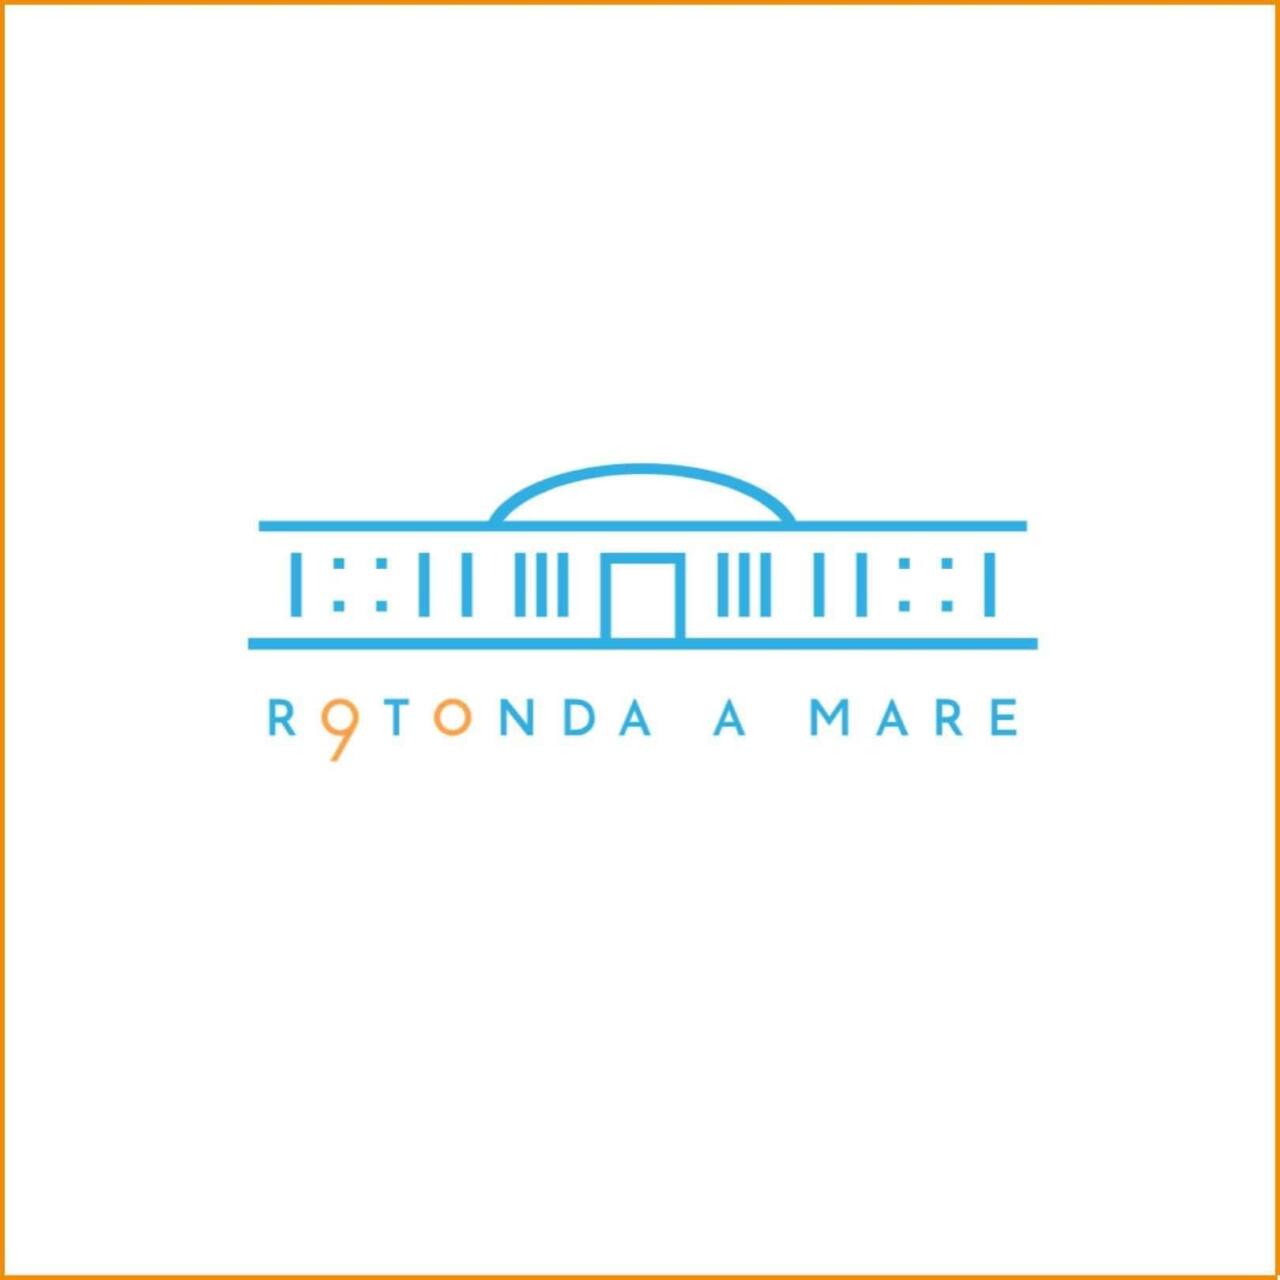 Il nuovo logo per i 90 anni della rotonda a mare di Senigallia